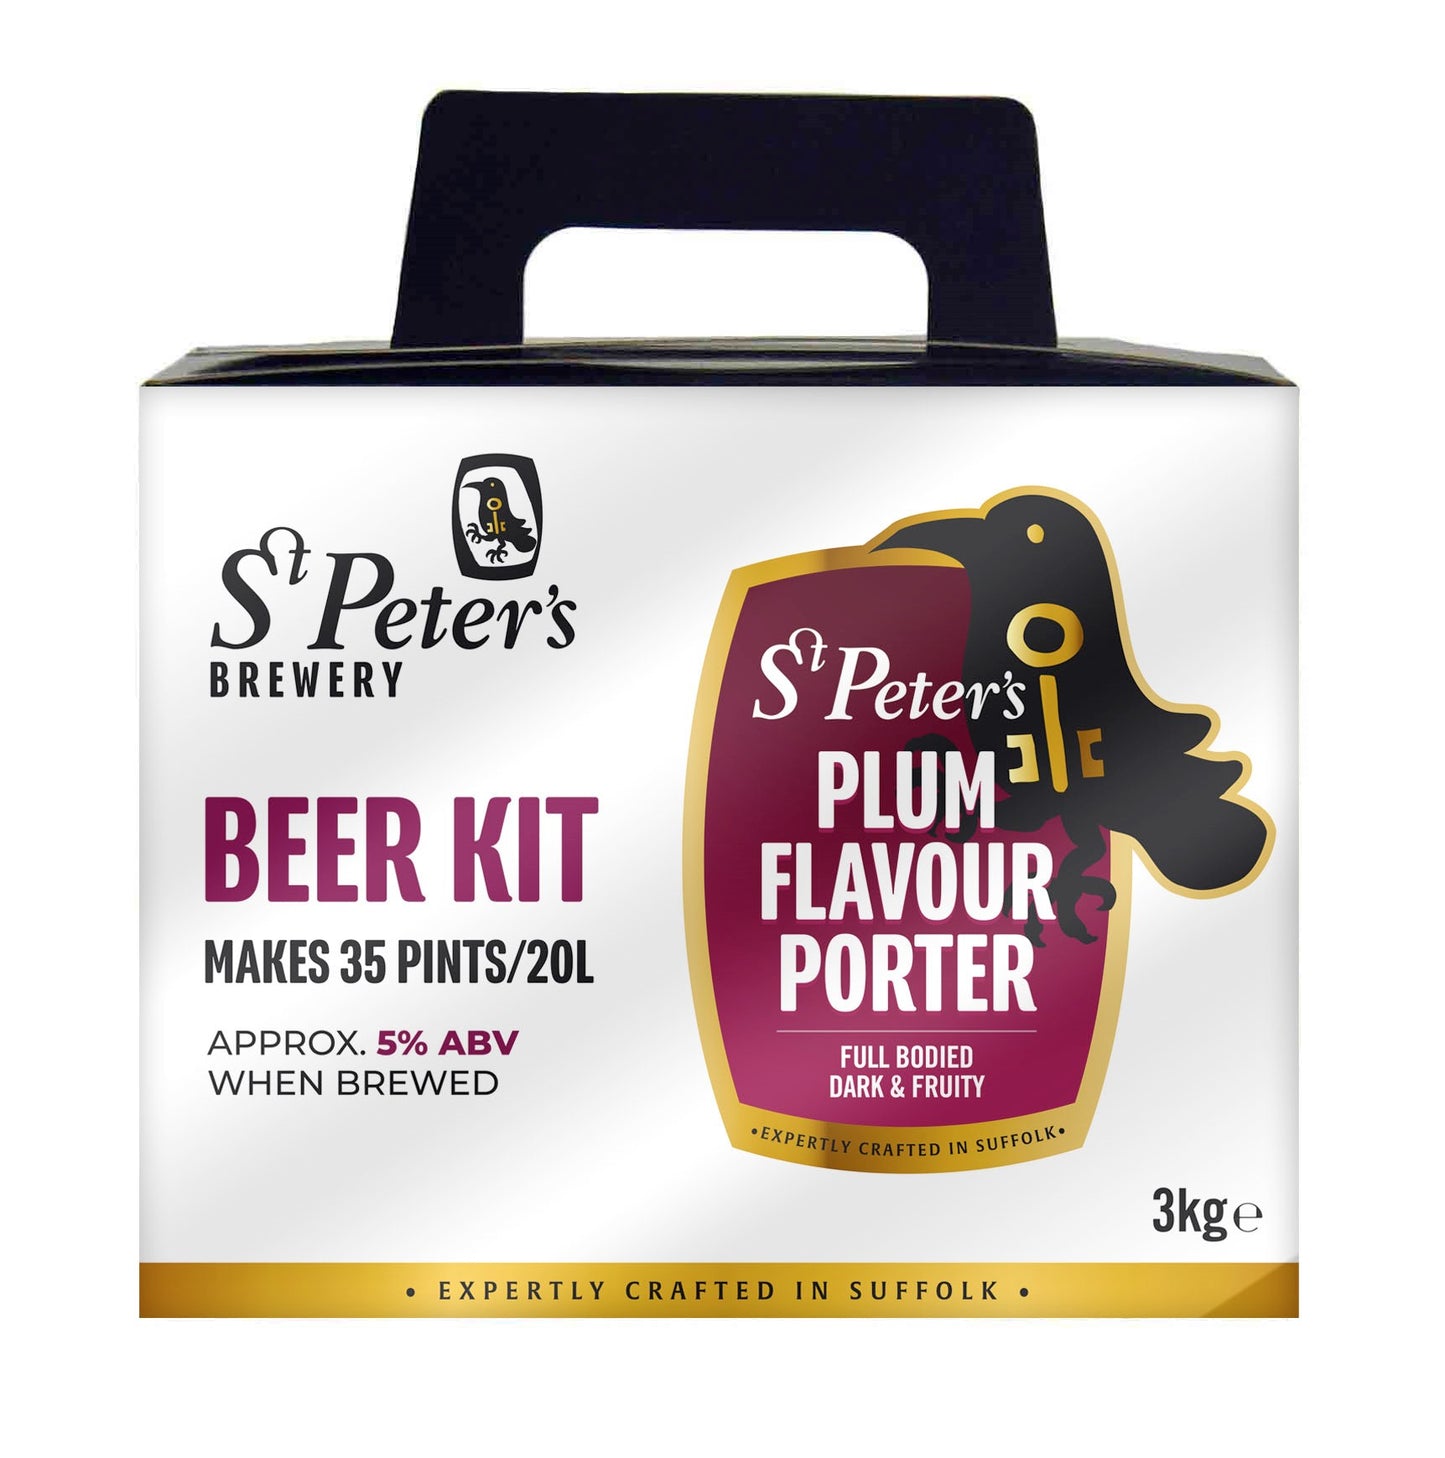 Plum Porter Beer Kit